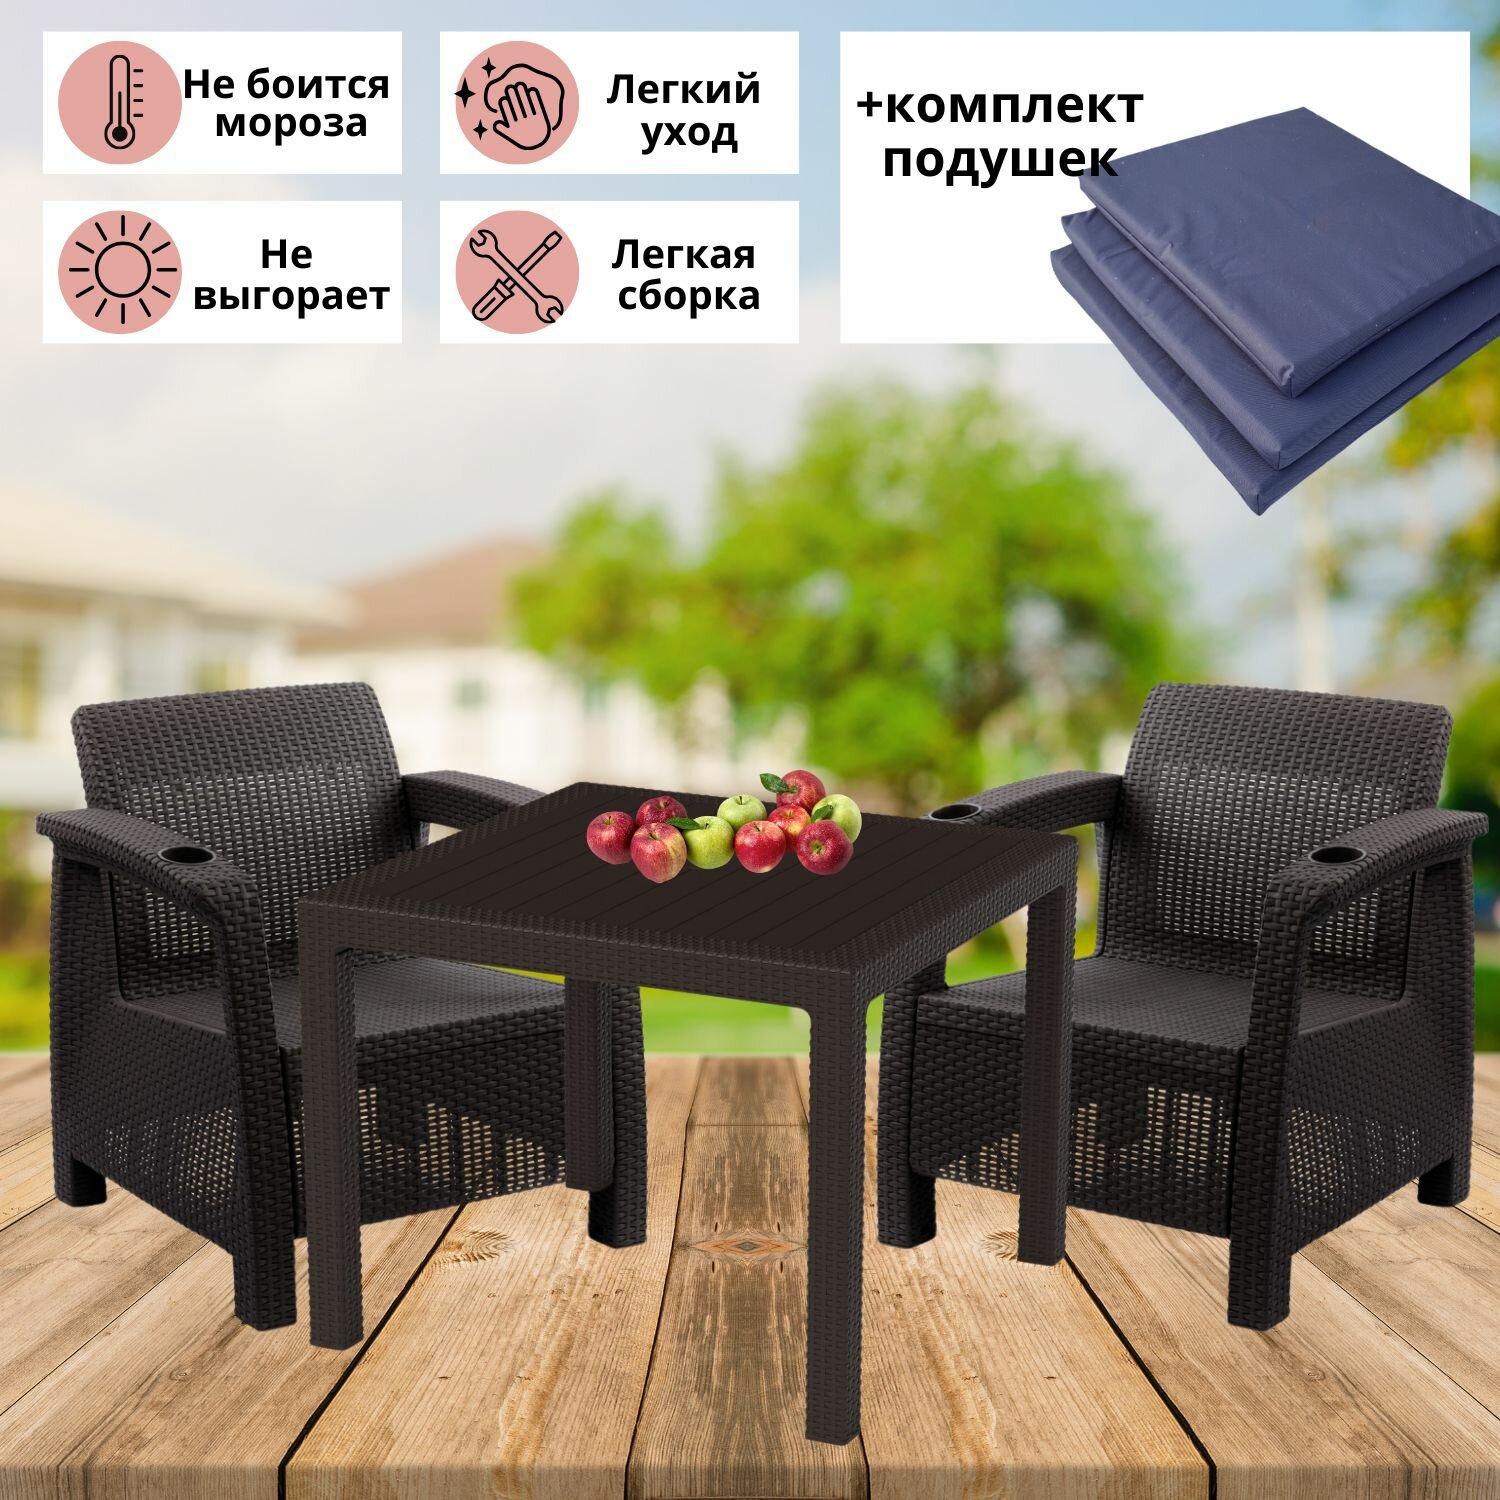 Садовая мебель. Набор дачный на 2 персоны (2 кресла + стол), искуственный ротанг, мокко, (темно-синие подушки)